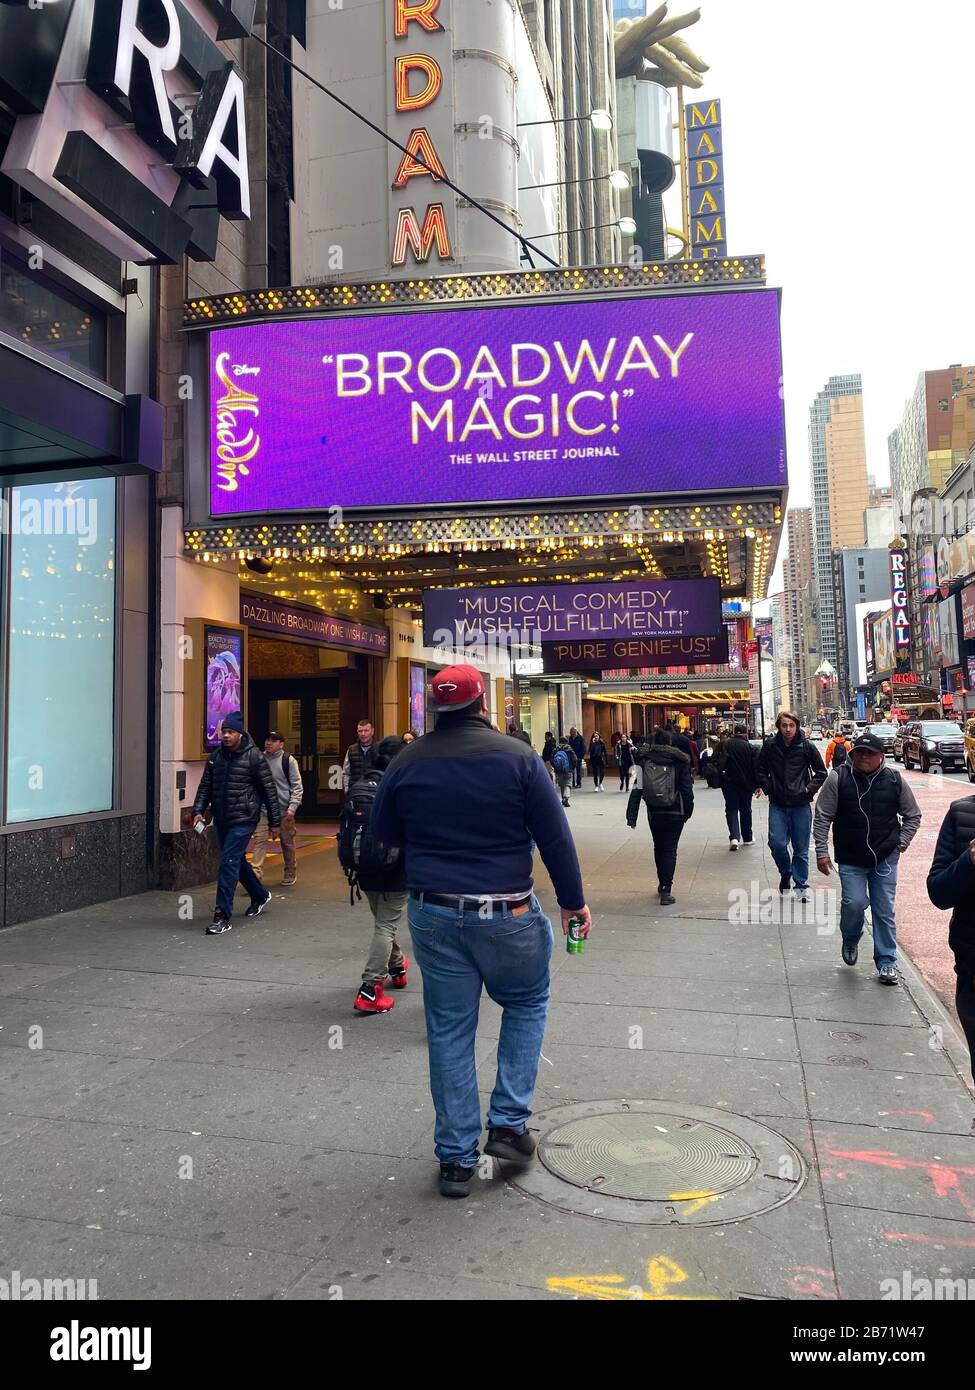 Nueva York, NY, EE.UU. 12 de marzo de 2020. Vista del Nuevo Teatro de Amsterdam, hogar del Aladdin de Broadway, como los temores de coronavirus resultan en el distrito de los teatros cerrando todas las representaciones teatrales y reuniones de 500 personas o más en la ciudad de Nueva York el 12 de marzo de 2020. Crédito: Rainmaker Photos/Media Punch/Alamy Live News Foto de stock